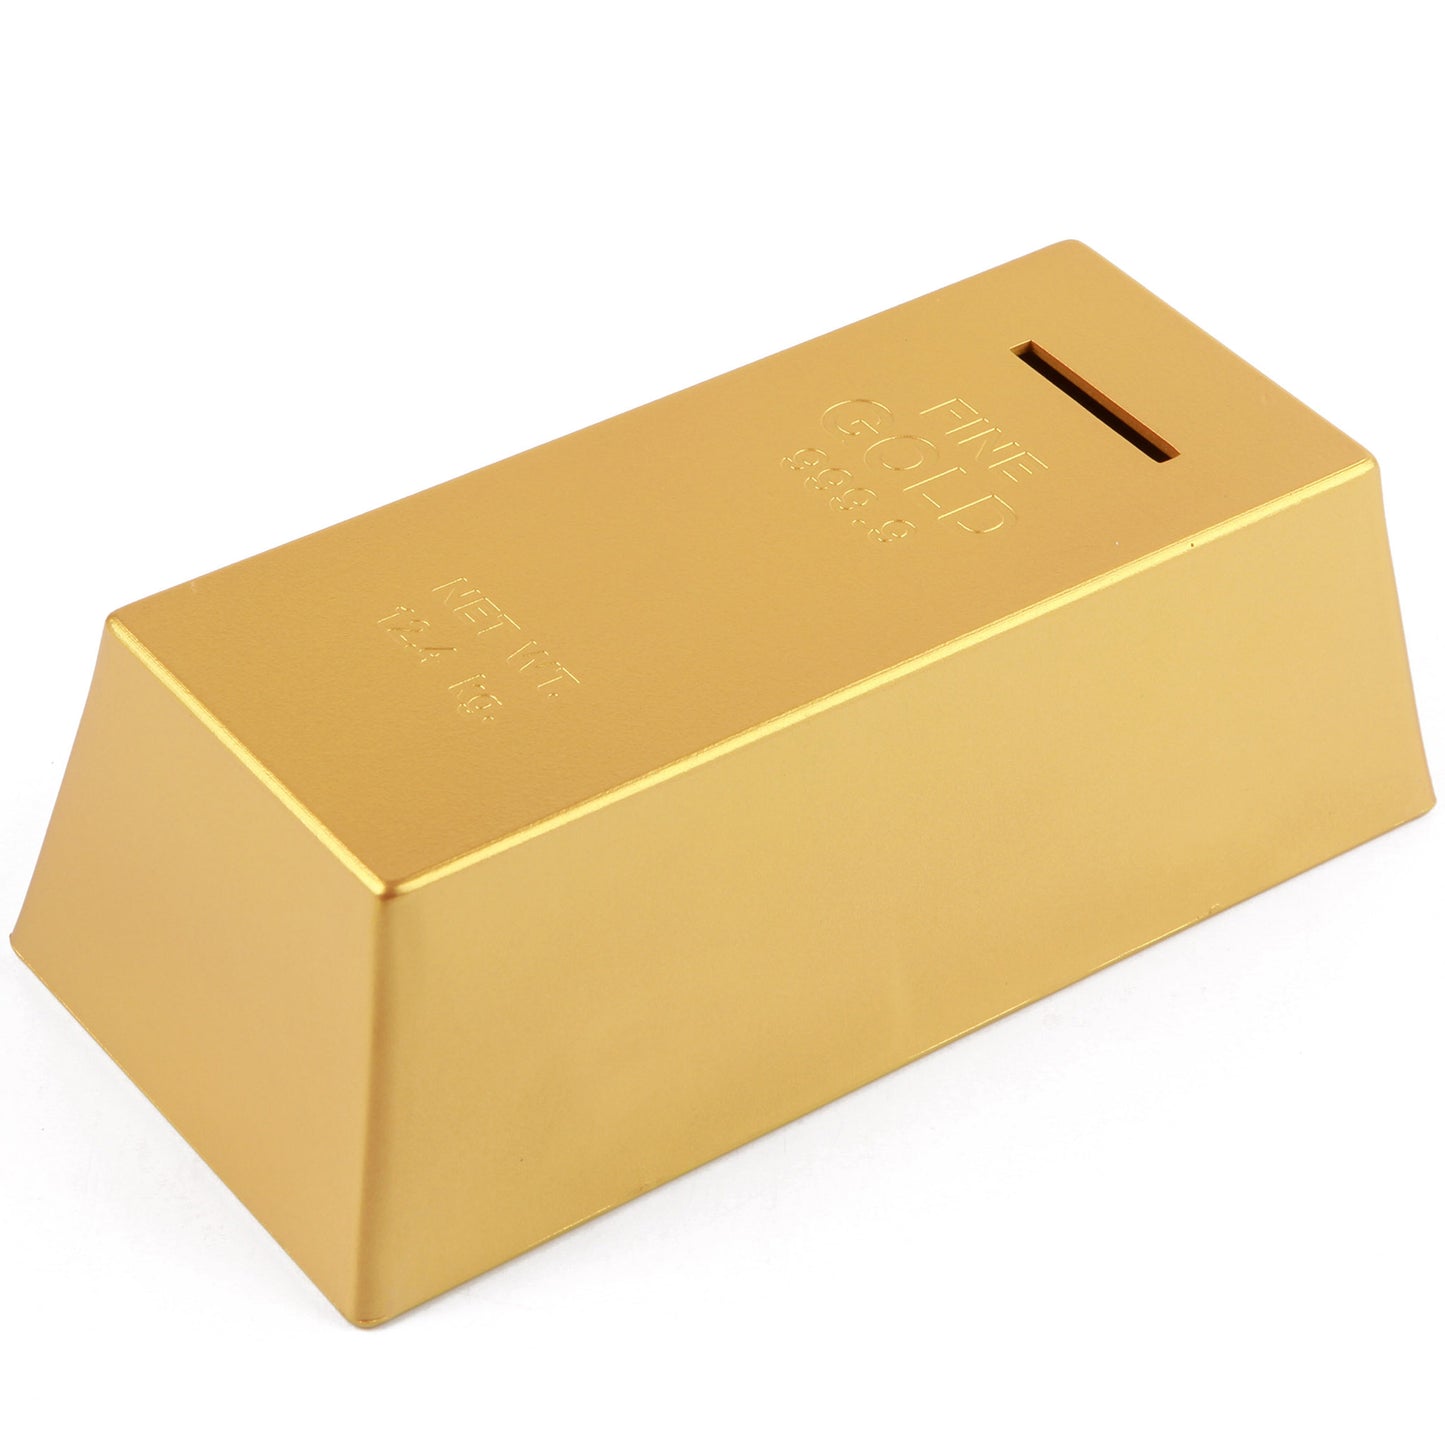 Gold Bar - Coin Bank